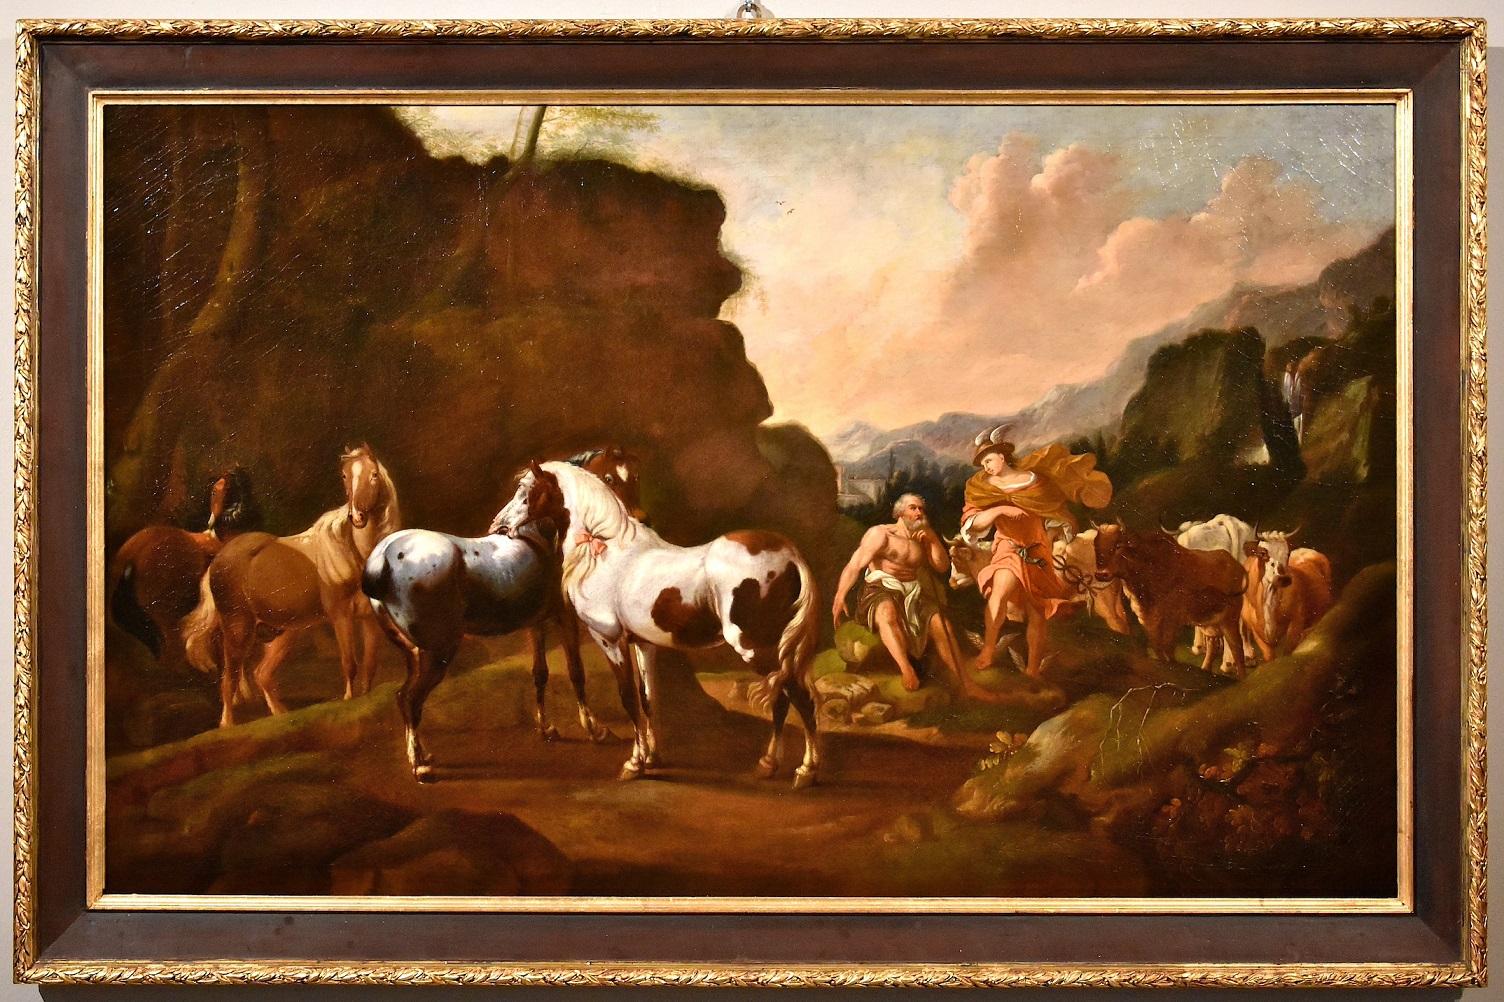 Landscape Painting Johann Heinrich Roos (Otterberg 1631 - Frankfurt 1685) - Peinture de cheval mercuré Roos Landscape Mythe Huile sur toile Grand maître 17ème siècle